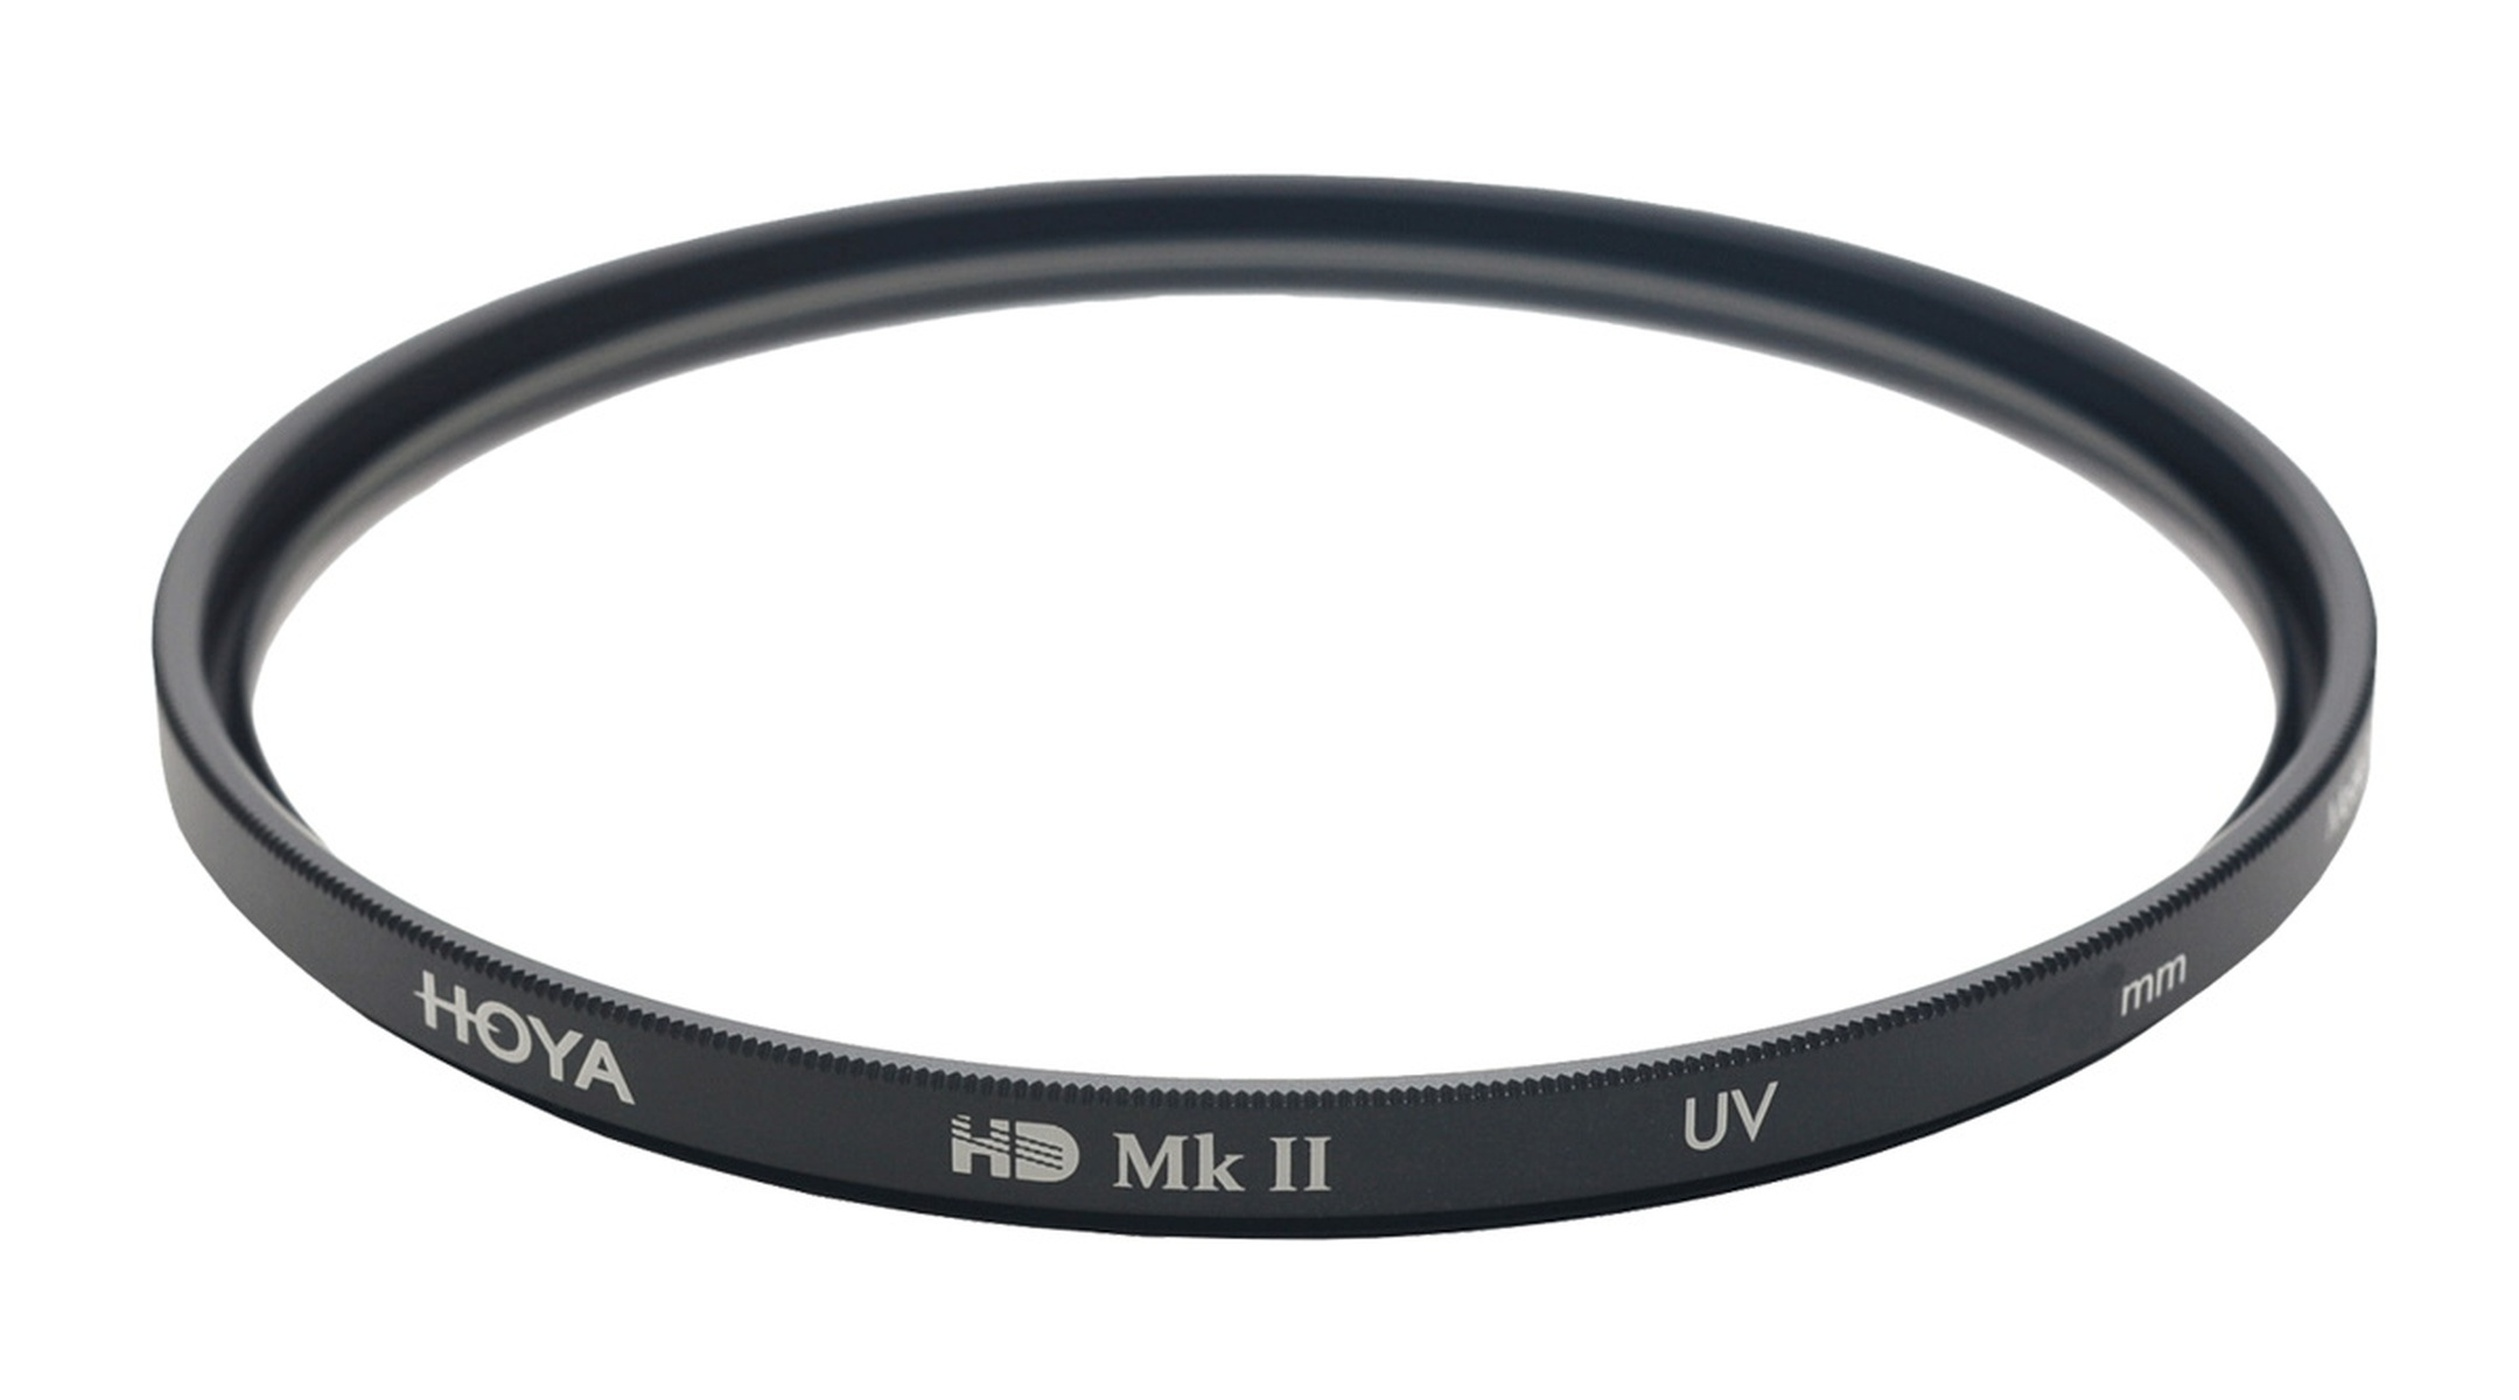 HOYA HD UV 49 MkII mm 49mm Filter UV Filter